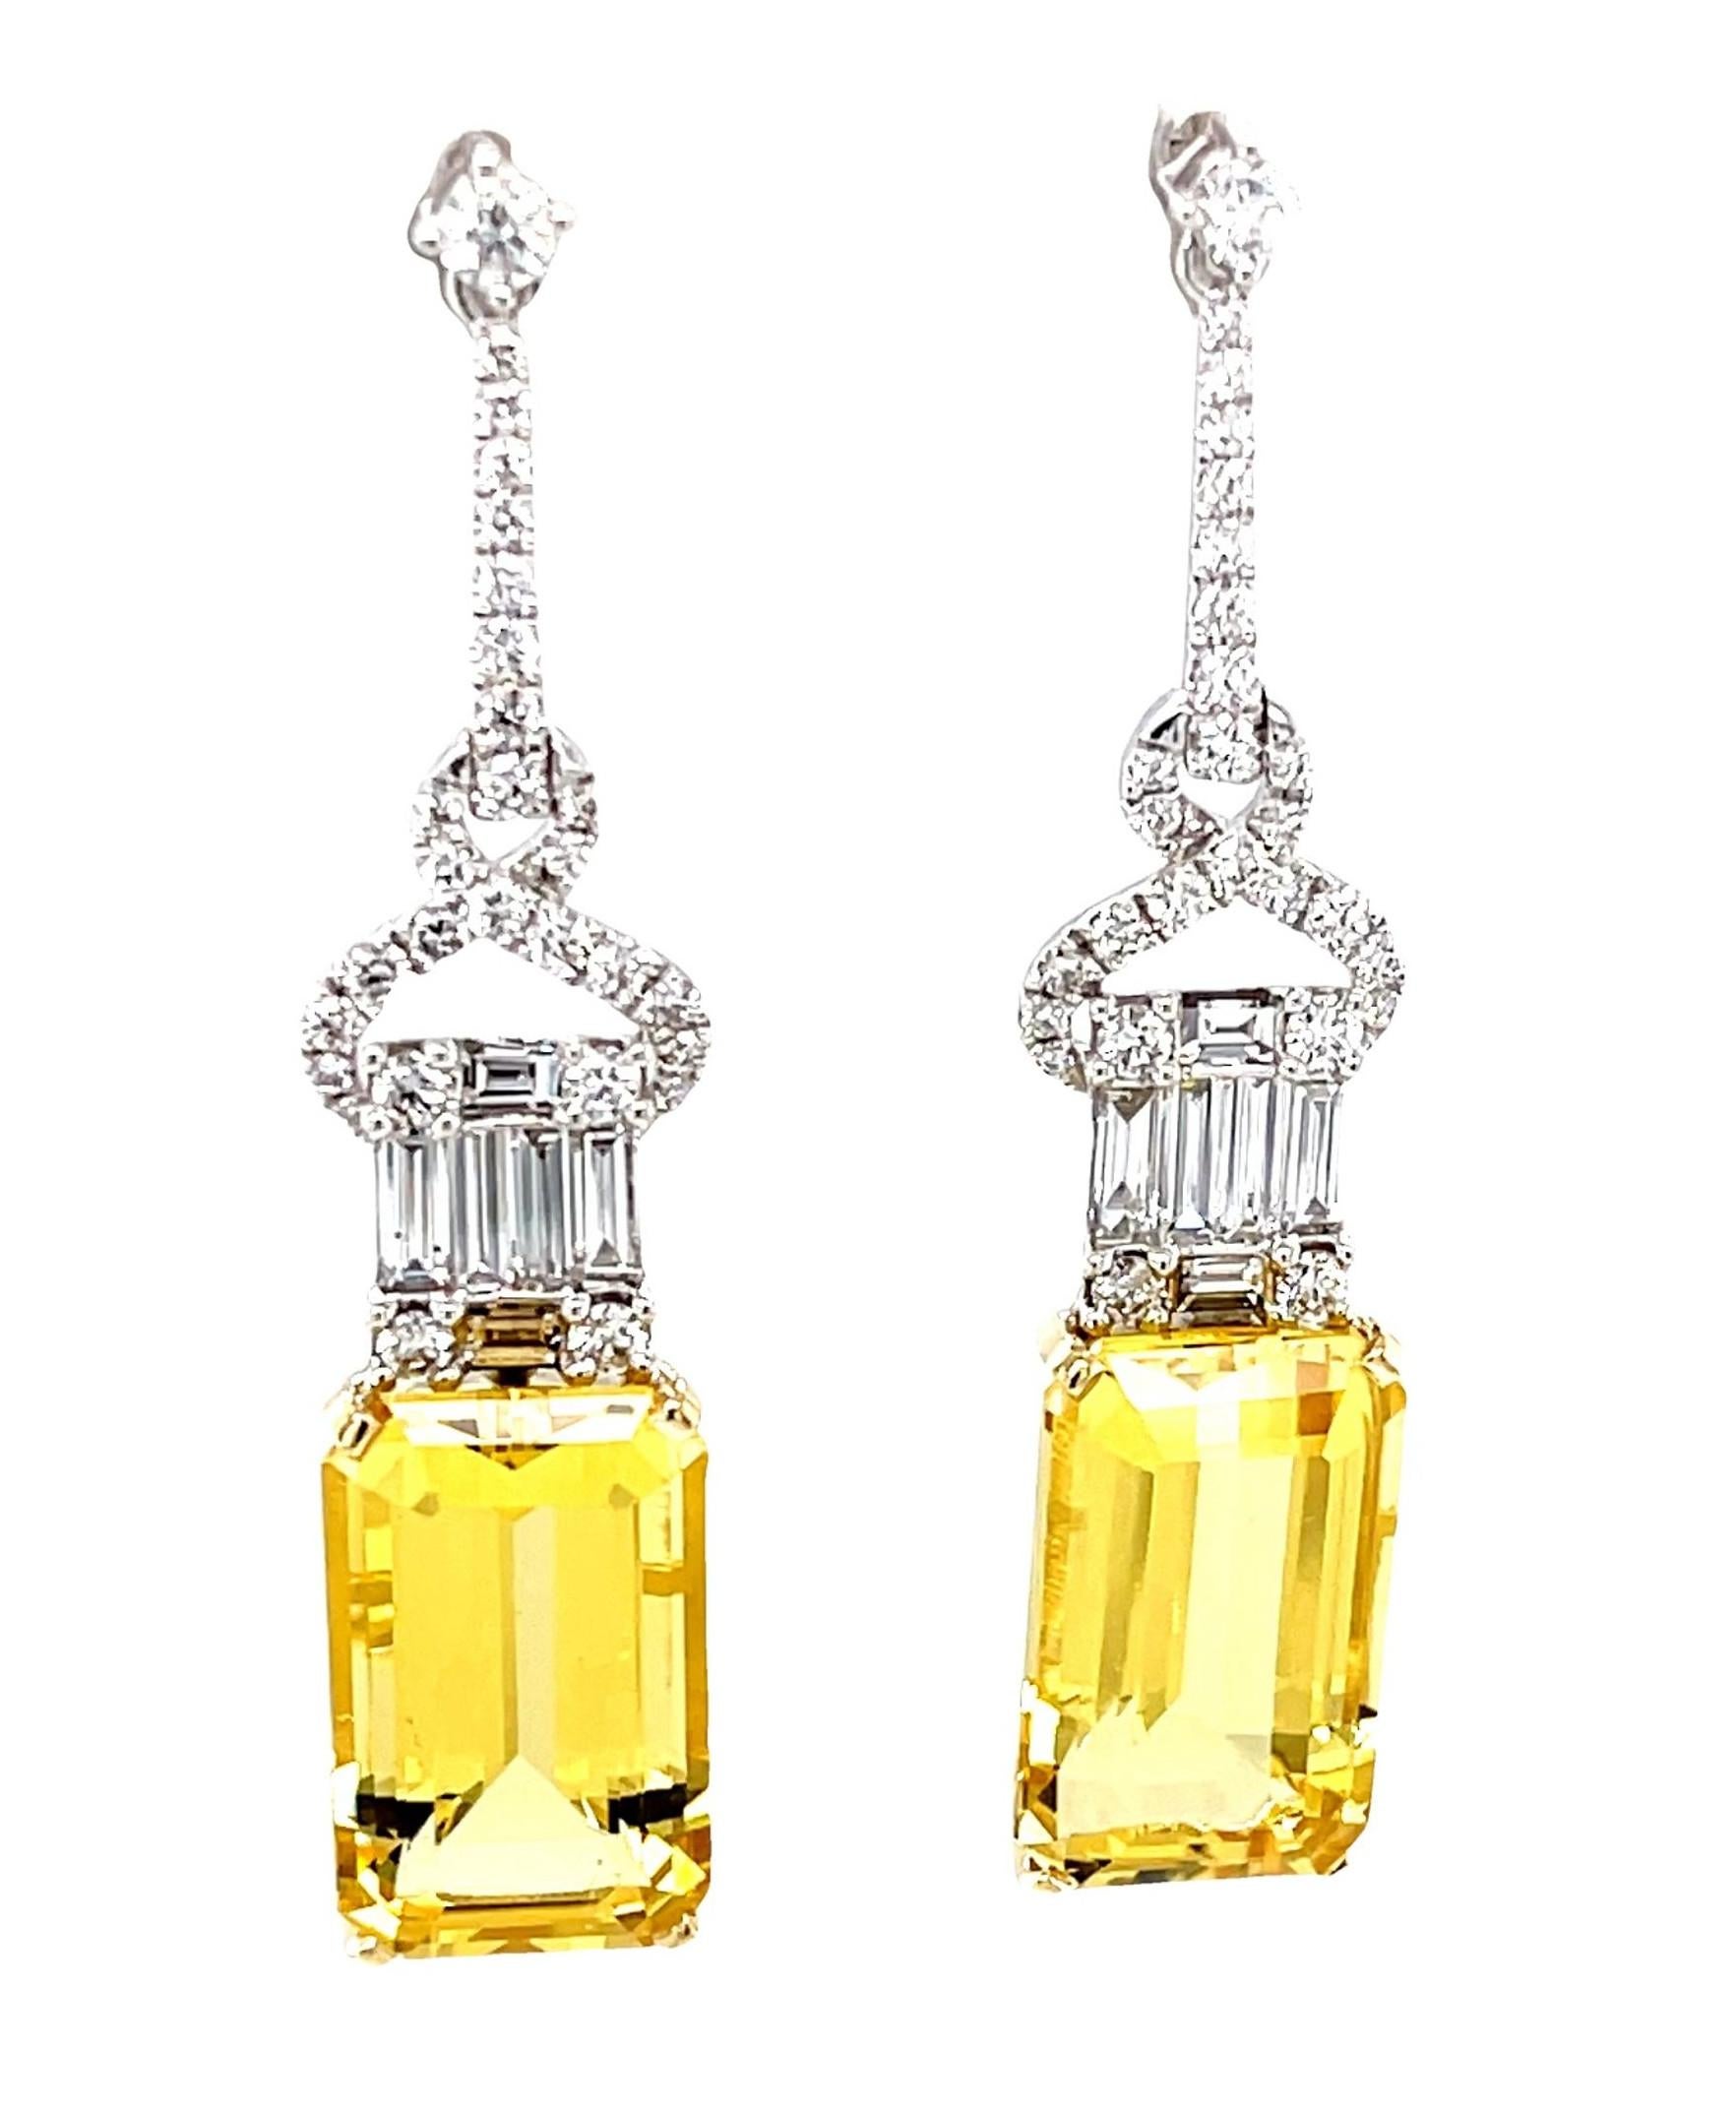 Diese glamourösen goldenen Beryll- und Diamant-Ohrringe sind so elegant und auffällig, dass Sie Ihren Terminkalender füllen werden, nur um sie vorzeigen zu können! Der Smaragdschliff des hochwertigen, kristallinen Berylls lenkt die Aufmerksamkeit